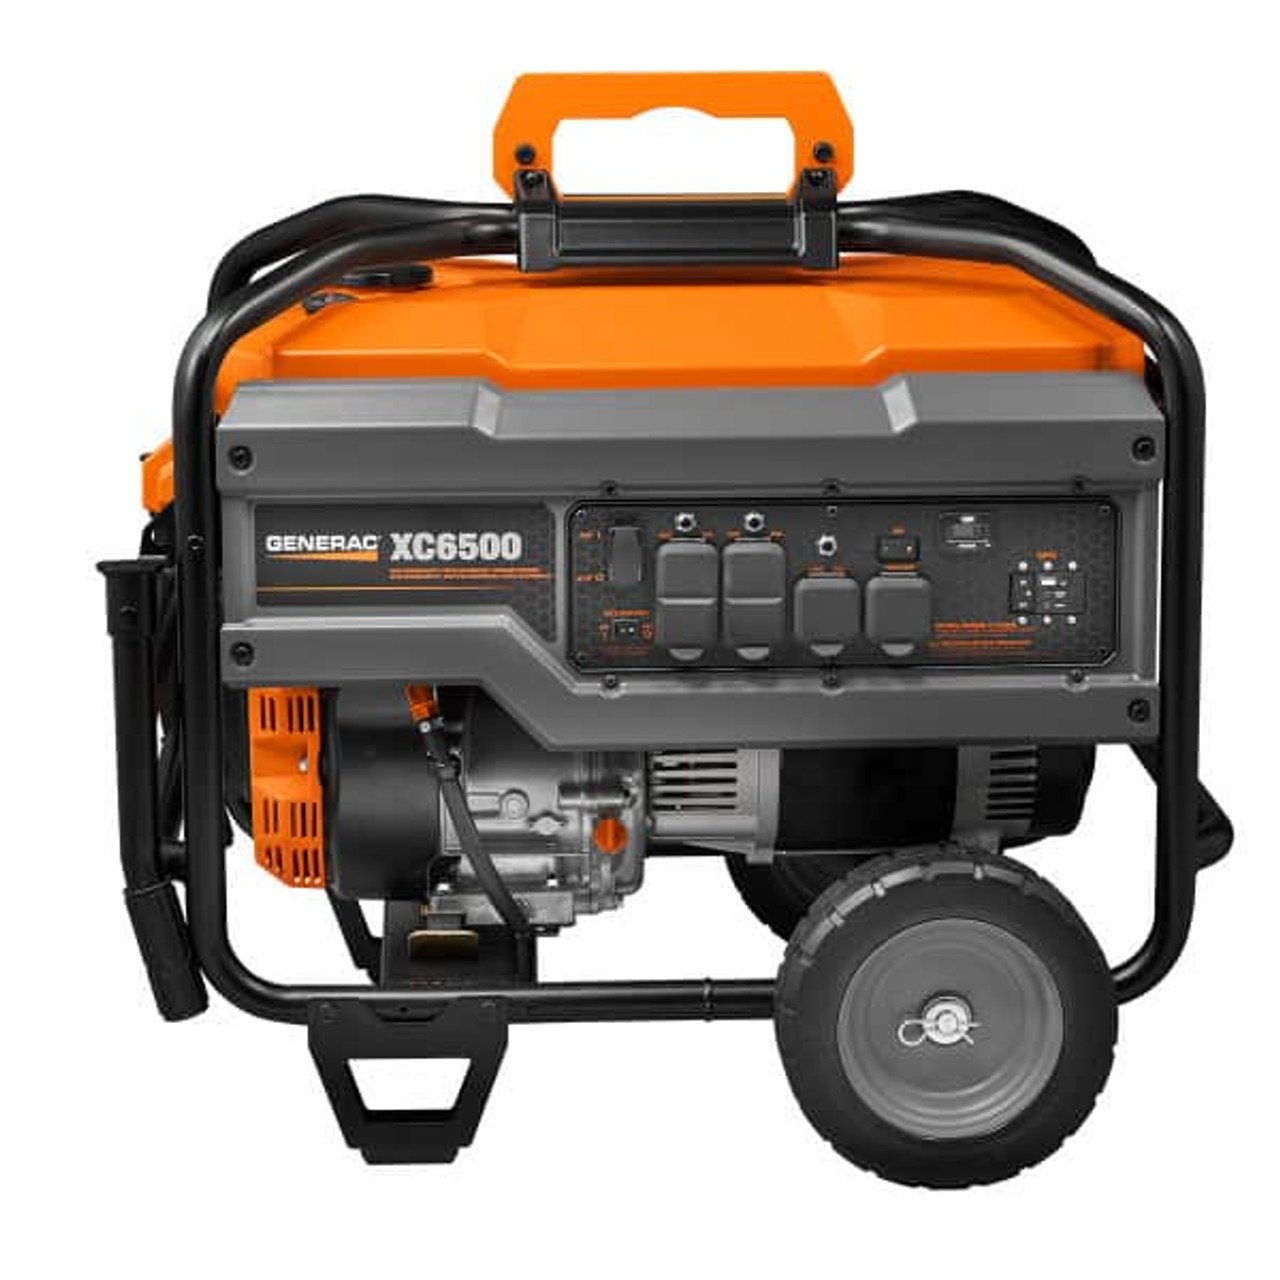 Generac 6824 426cc 6,500-Watt Carb Compliant Portable Generator – XC6500